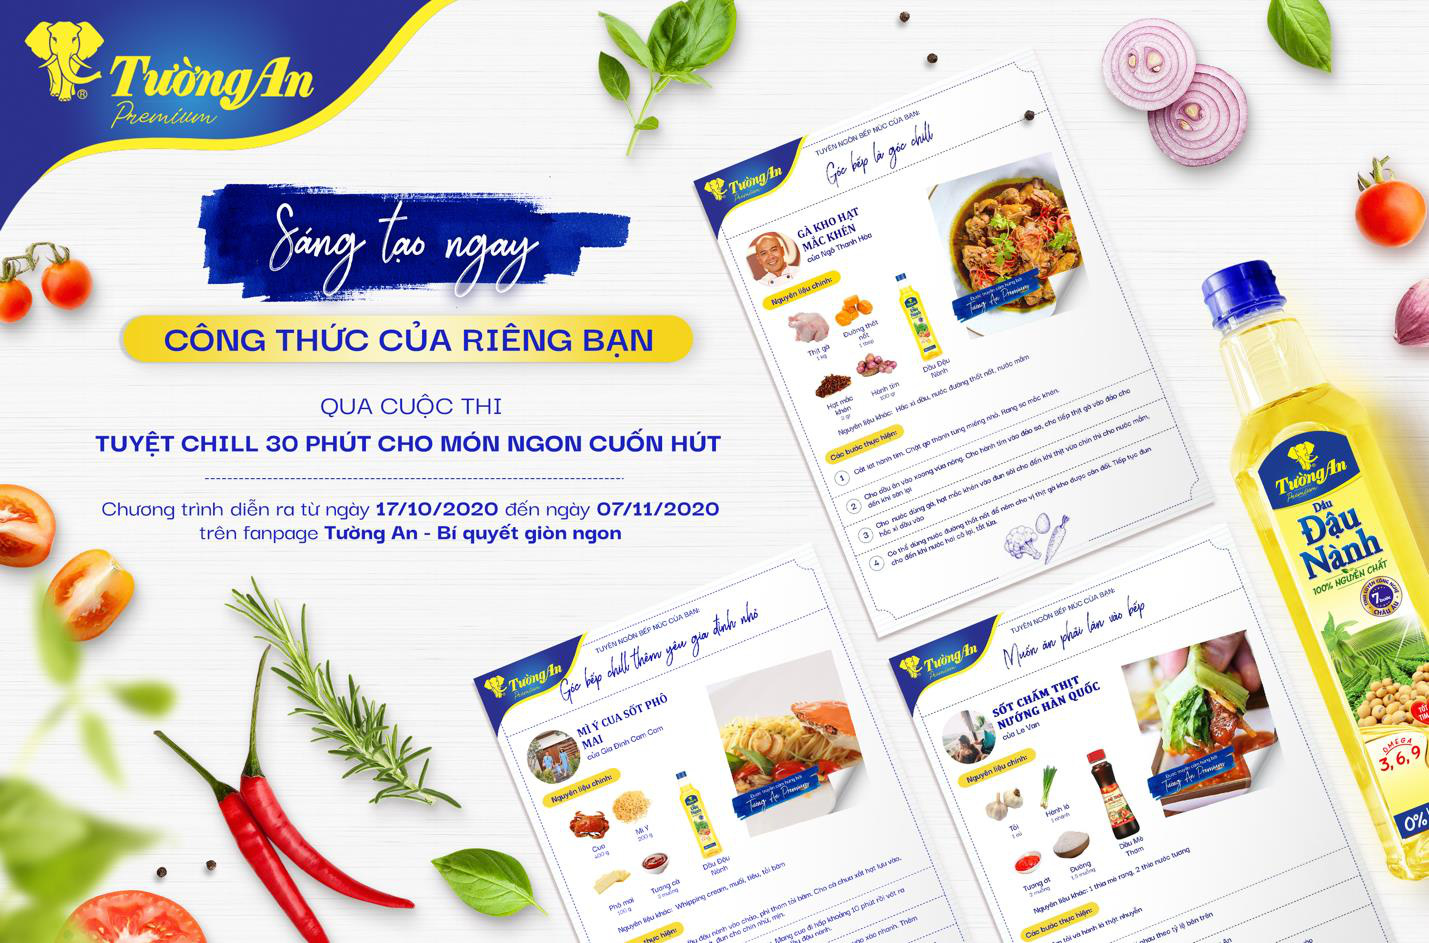 Hội yêu bếp bắt “trend” so tài sáng tạo công thức của riêng mình cùng Masterchef Việt Nam Ngô Thanh Hoà - Ảnh 3.